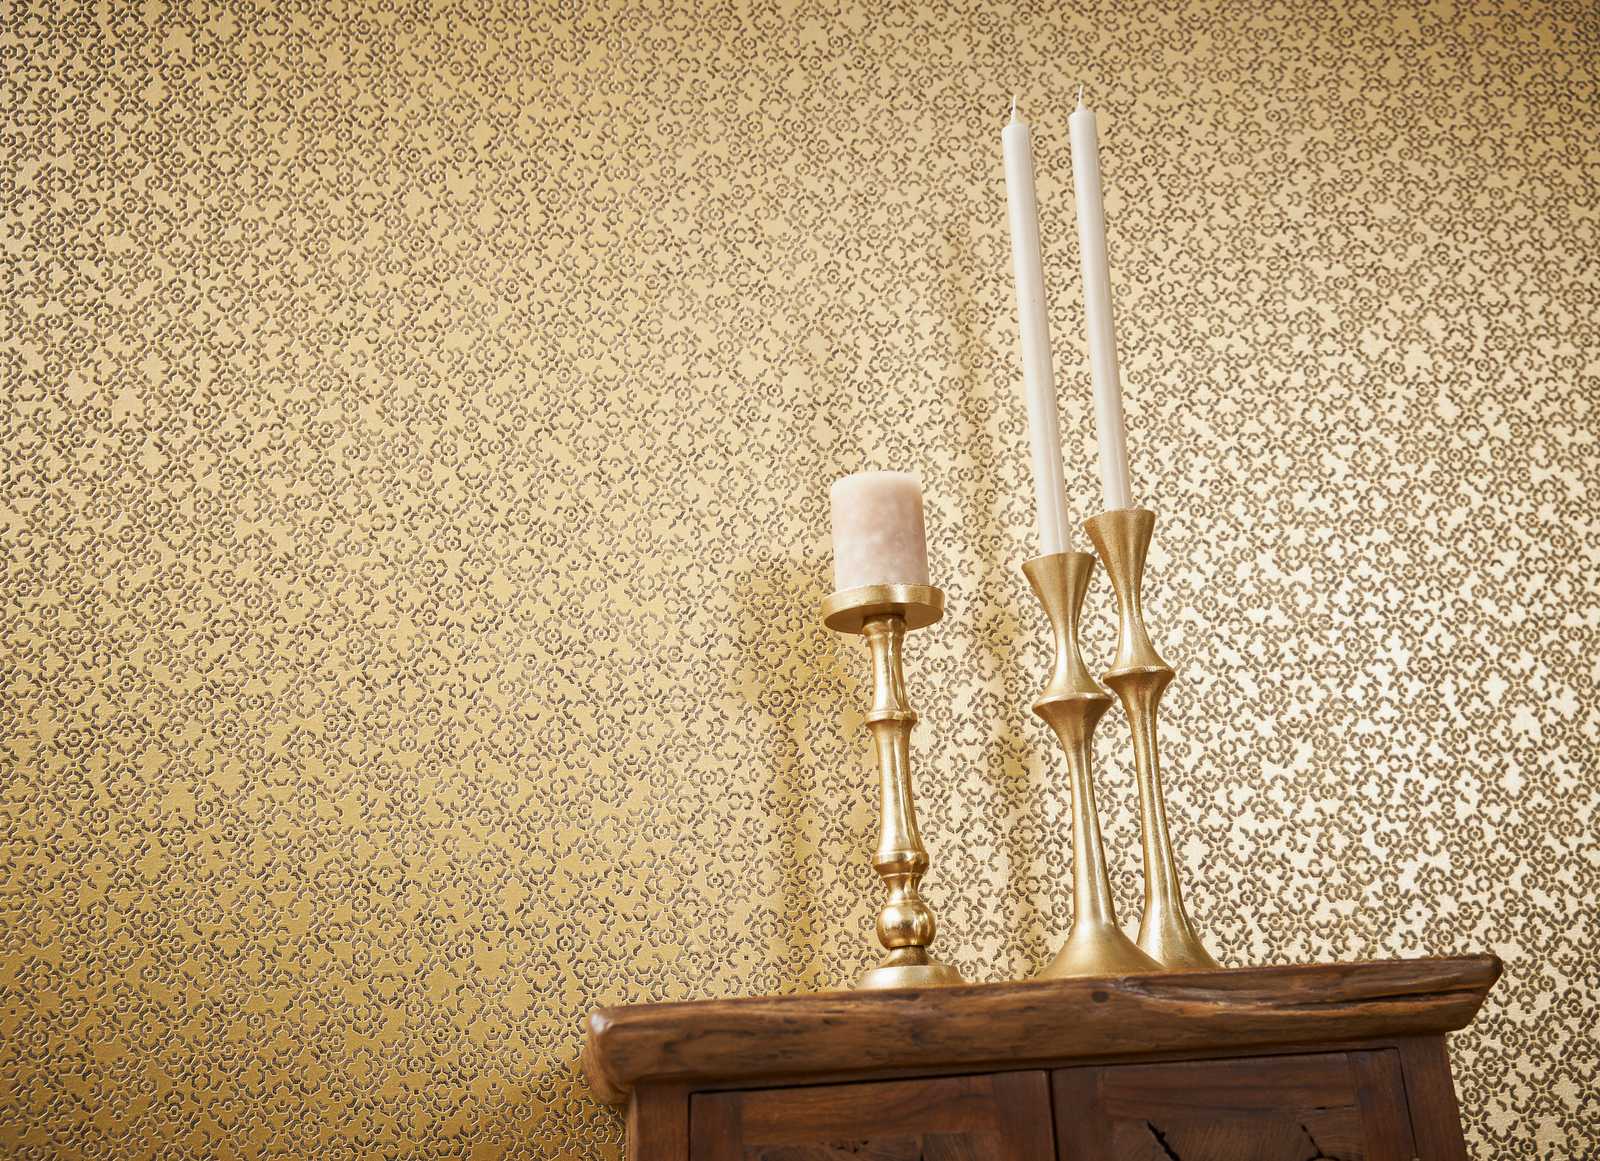             Papel pintado dorado con efecto 3D y brillo metálico - Marrón, Amarillo, Metálico
        